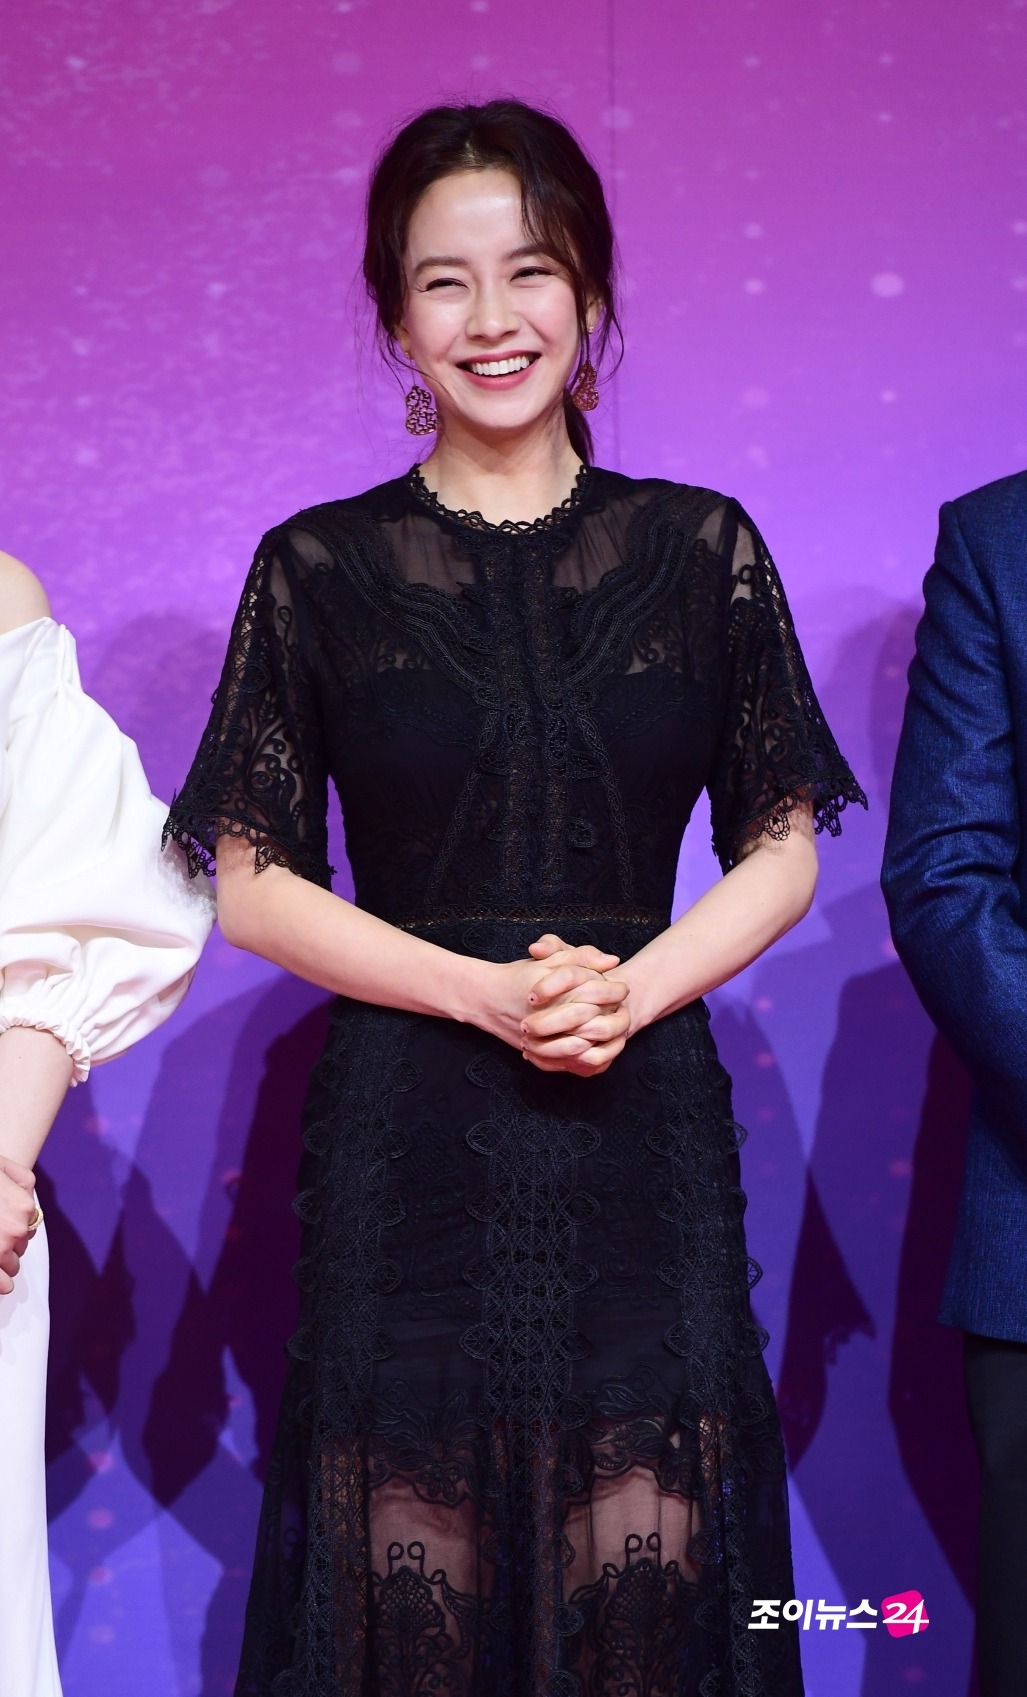 Thực tế, Song Ji Hyo thường chọn trang phục nền nã, kín đáo khi sải bước tại các lễ trao giải, hay sự kiện lớn. Trong hình, cô mặc một chiếc váy ren xuyên thấu thanh lịch, kết hợp với mái tóc buộc thấp và cách trang điểm nhẹ nhàng.